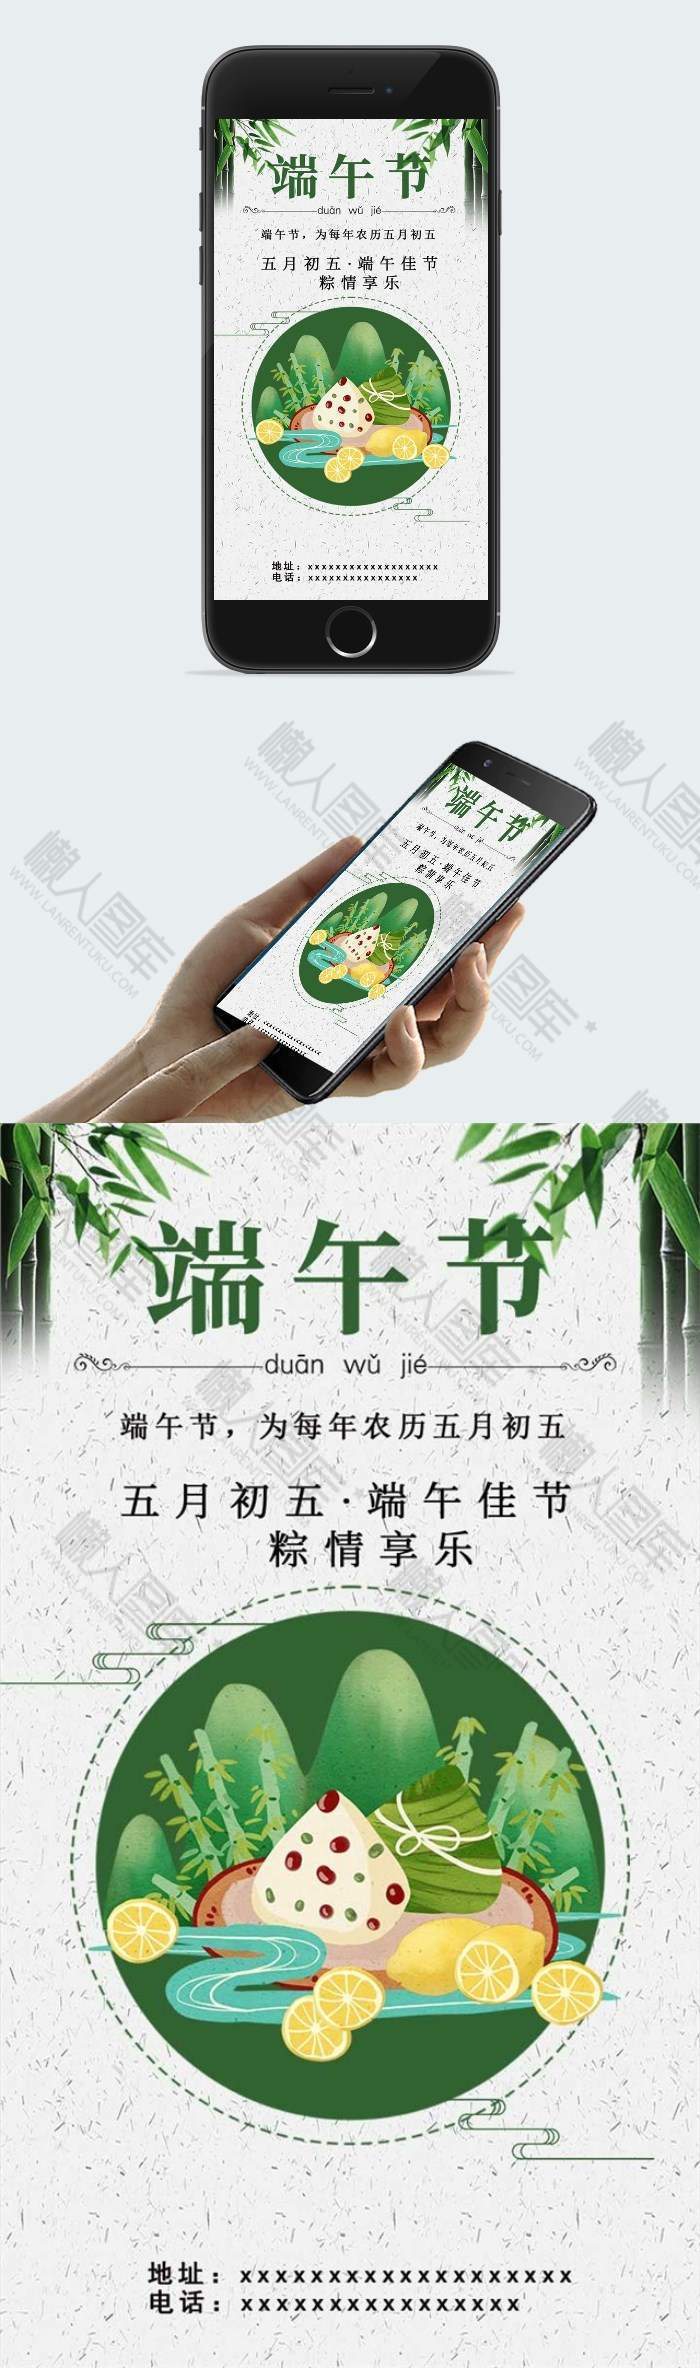 绿色传统端午节宣传海报